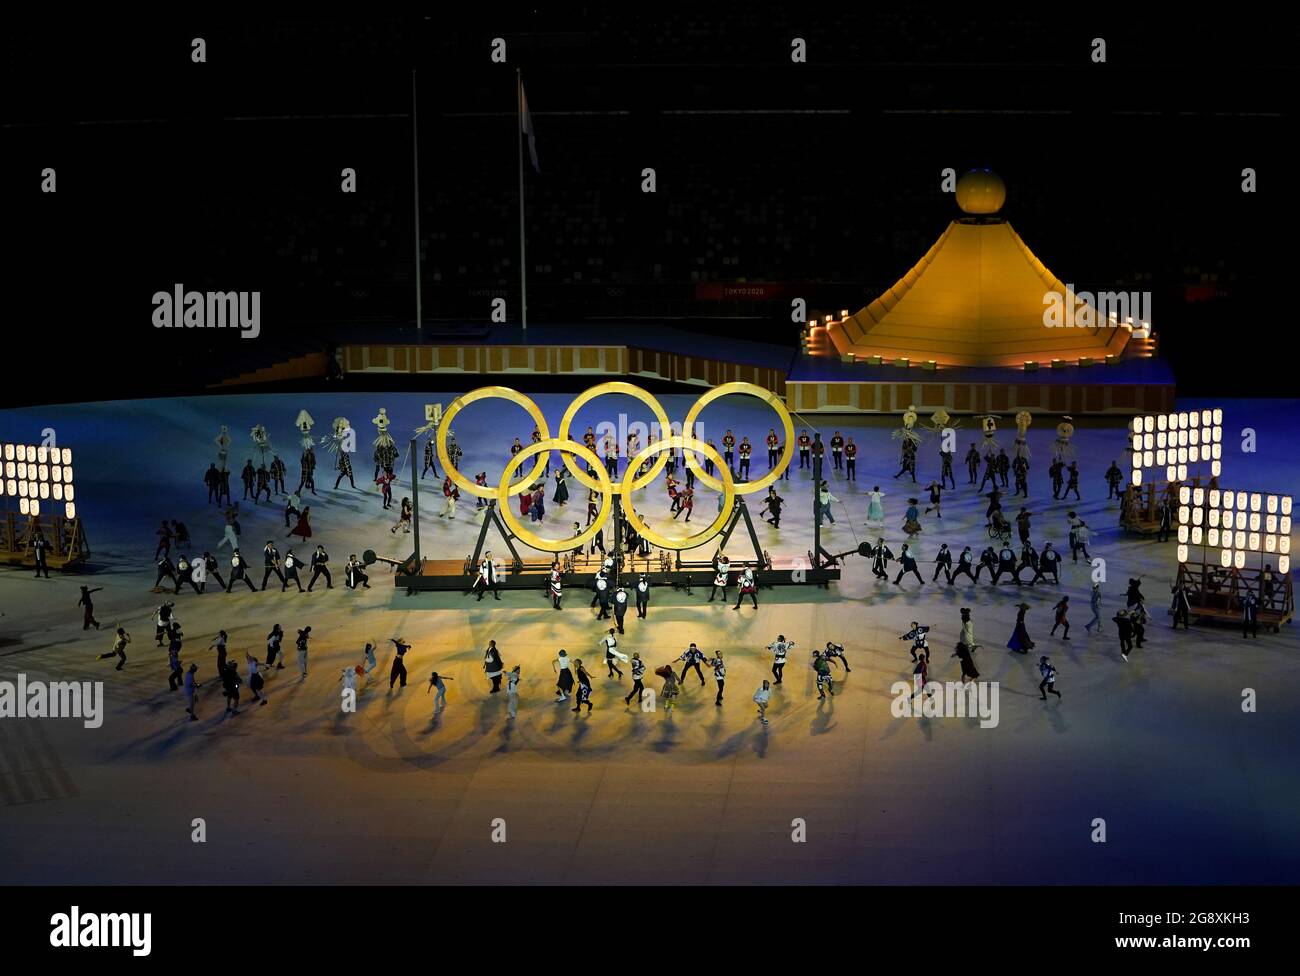 Artisti durante la cerimonia di apertura dei Giochi Olimpici di Tokyo 2020 allo Stadio Olimpico in Giappone. Data immagine: Venerdì 23 luglio 2021. Foto Stock